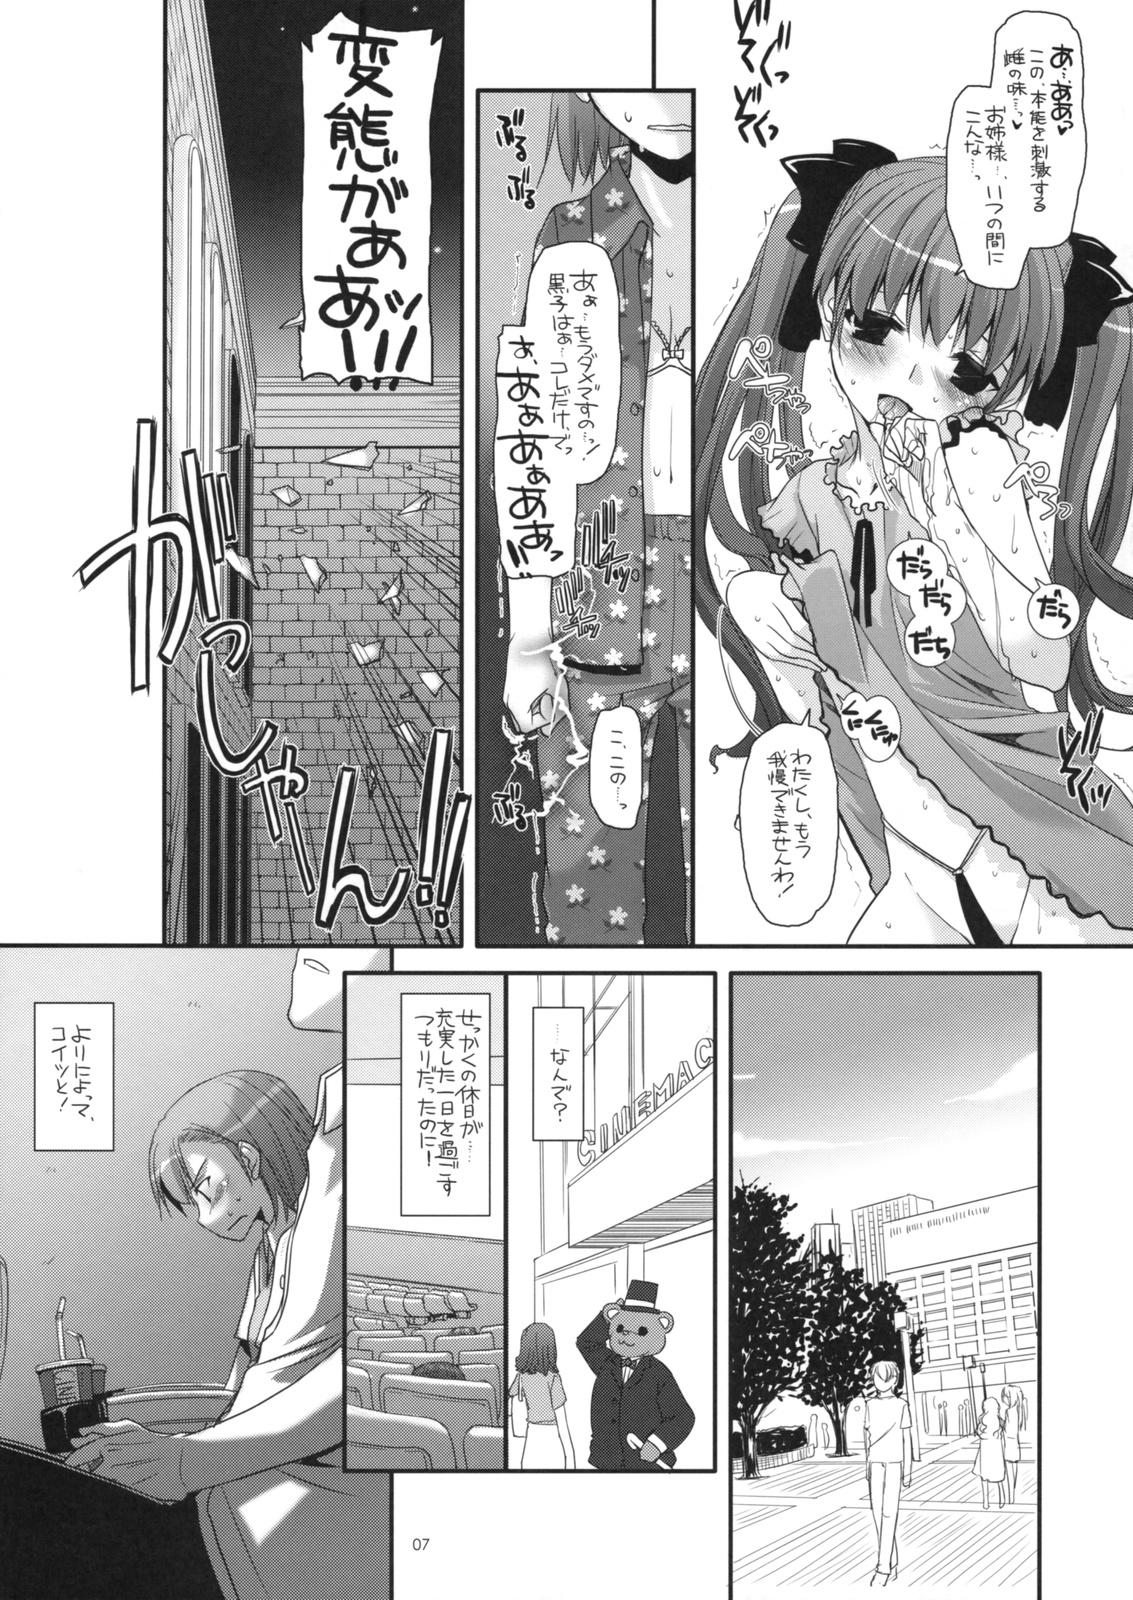 Tiny Tits Porn D.L. action 50 - Toaru kagaku no railgun Toaru majutsu no index Camgirl - Page 6